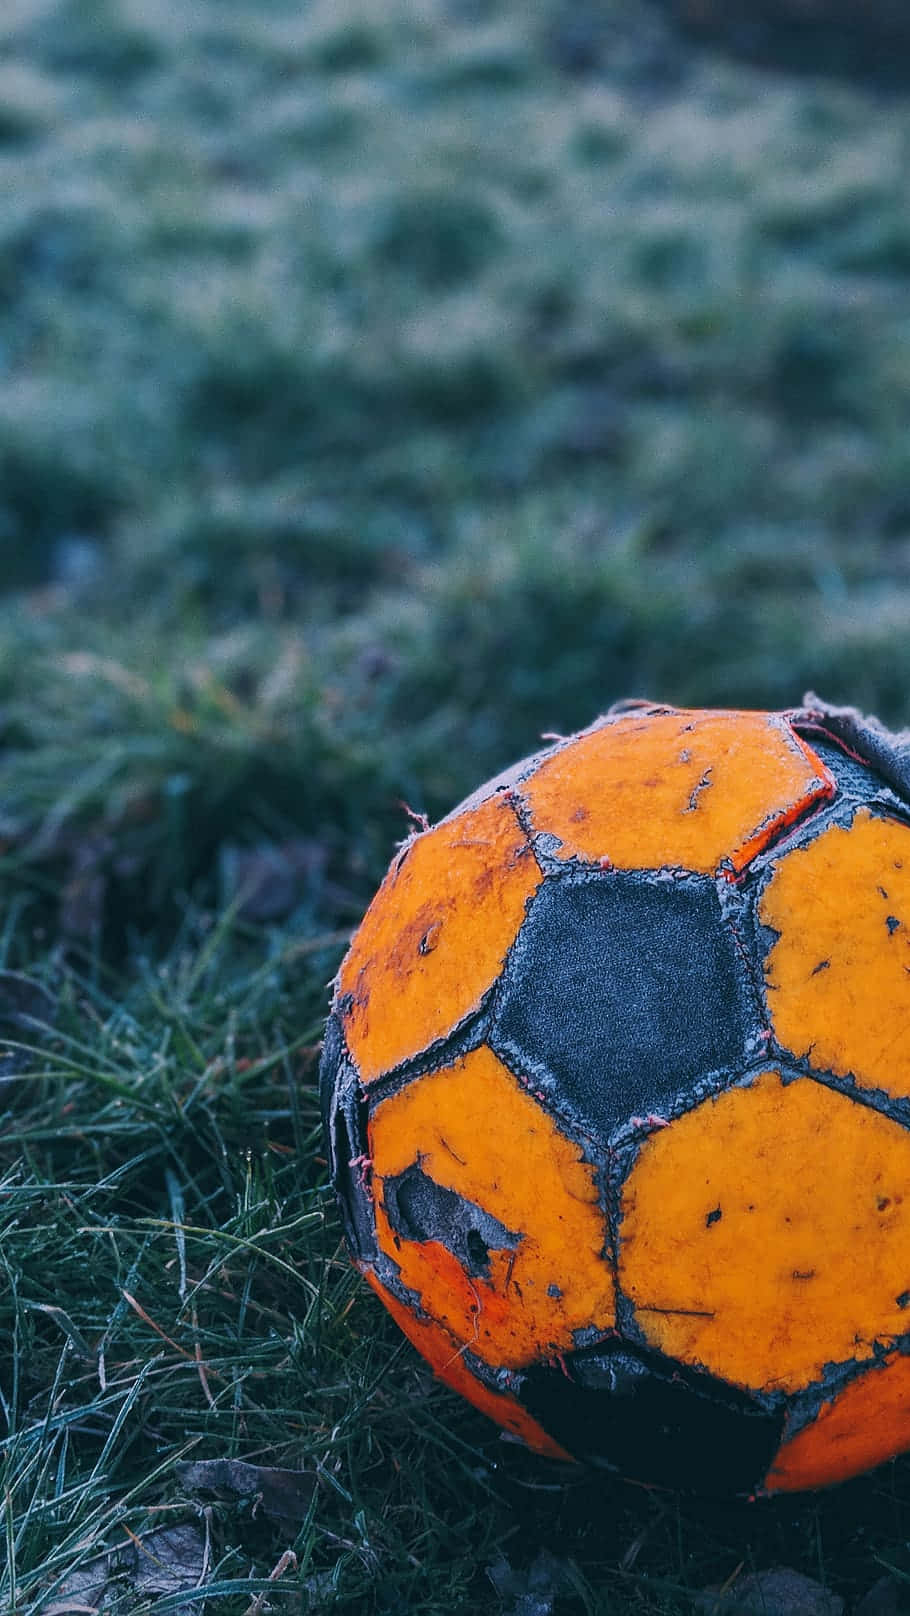 Einorangefarbener Fußball, Der Auf Dem Gras Liegt.